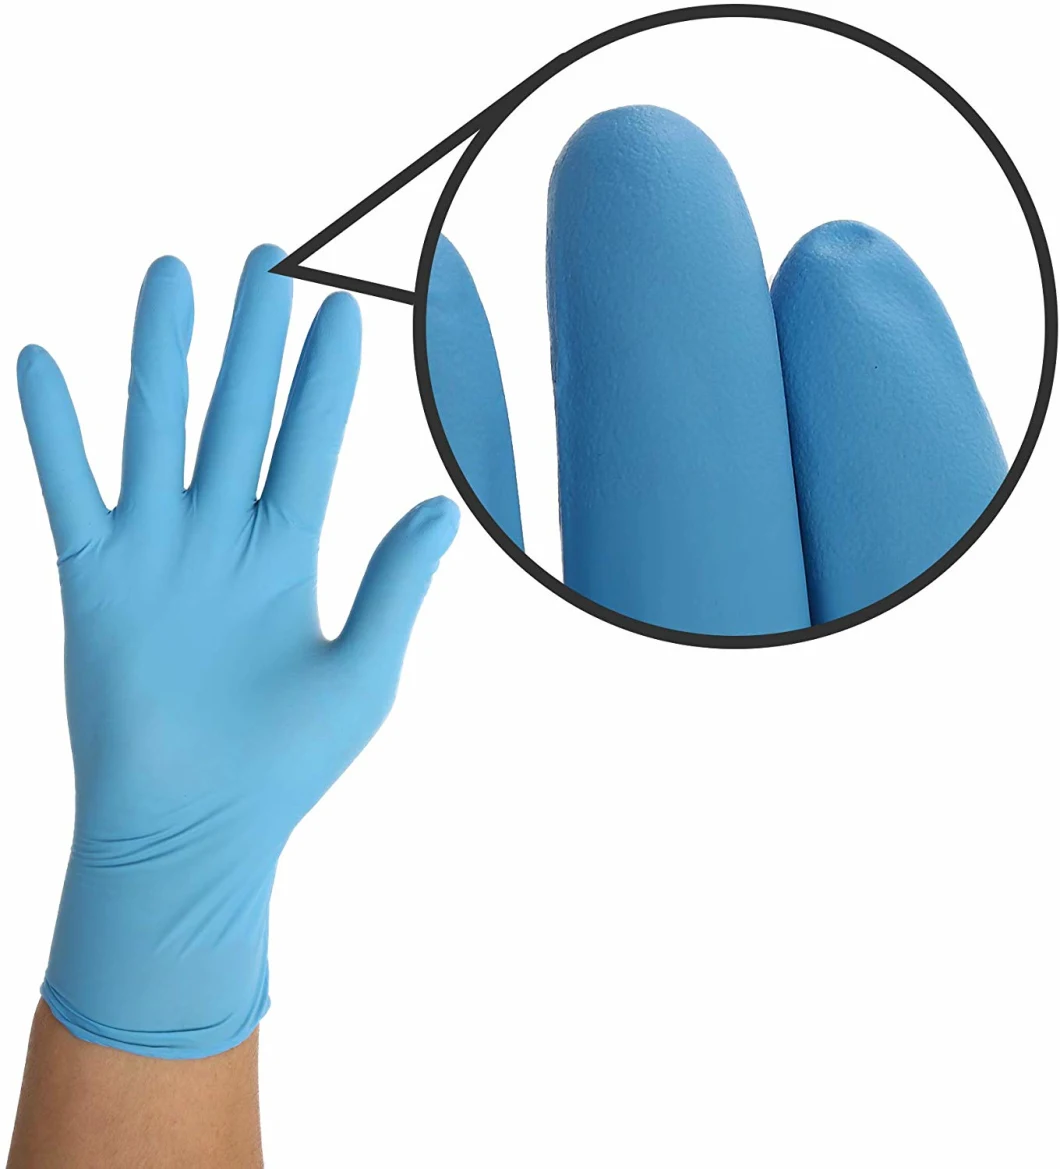 En455/FDA Manufacturer Powder Free Nitrile Gloves/Disposable Safety Gloves/Work Gloves for Medical/Industrial/Household/Food Purpose